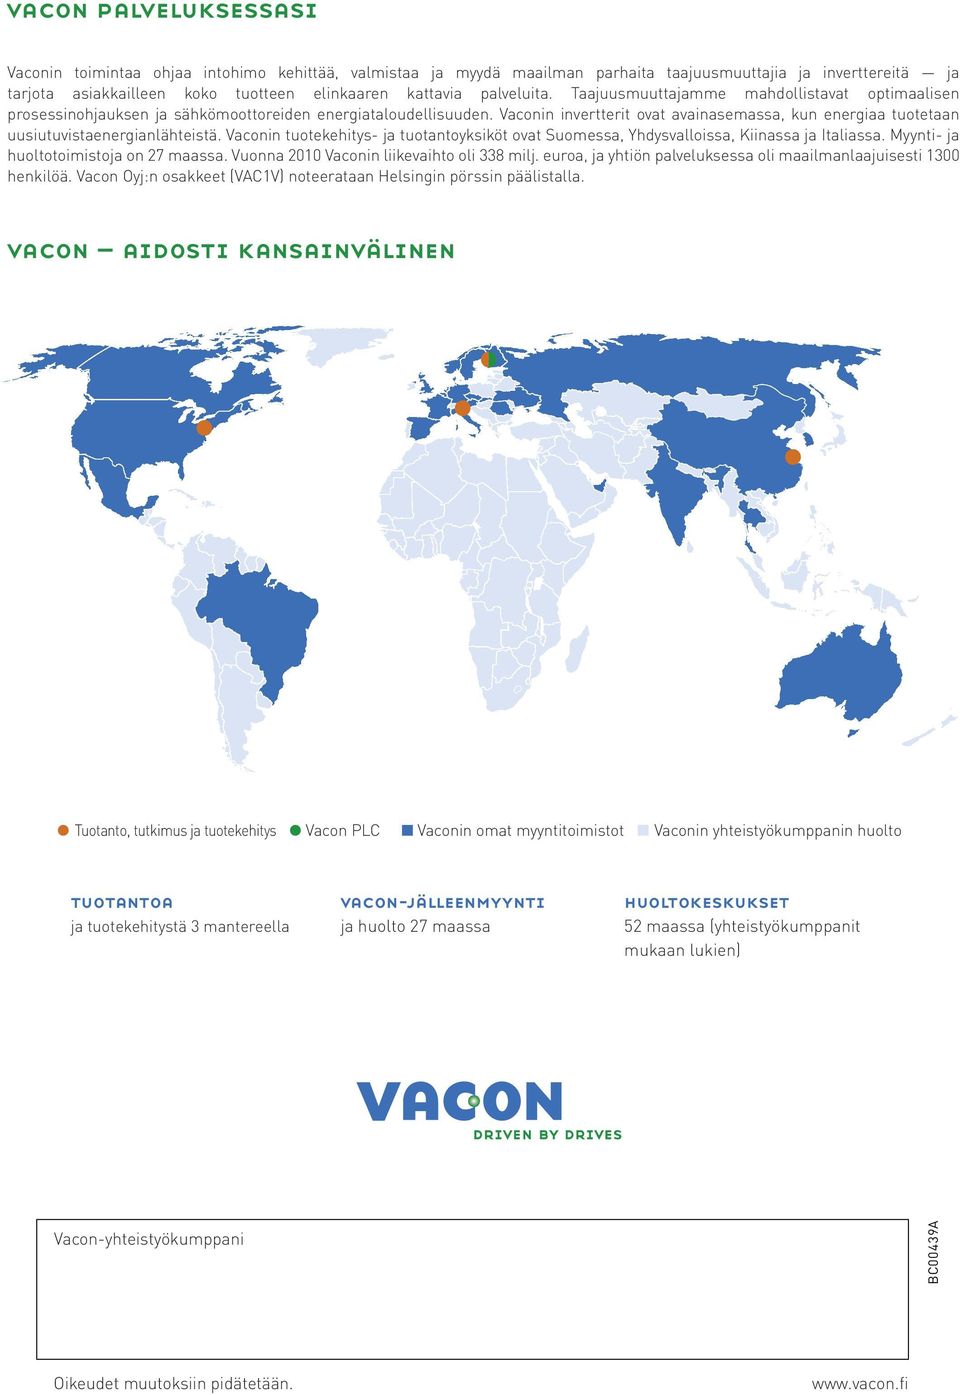 Vaconin invertterit ovat avainasemassa, kun energiaa tuotetaan uusiutuvistaenergianlähteistä. Vaconin tuotekehitys- ja tuotantoyksiköt ovat Suomessa, Yhdysvalloissa, Kiinassa ja Italiassa.